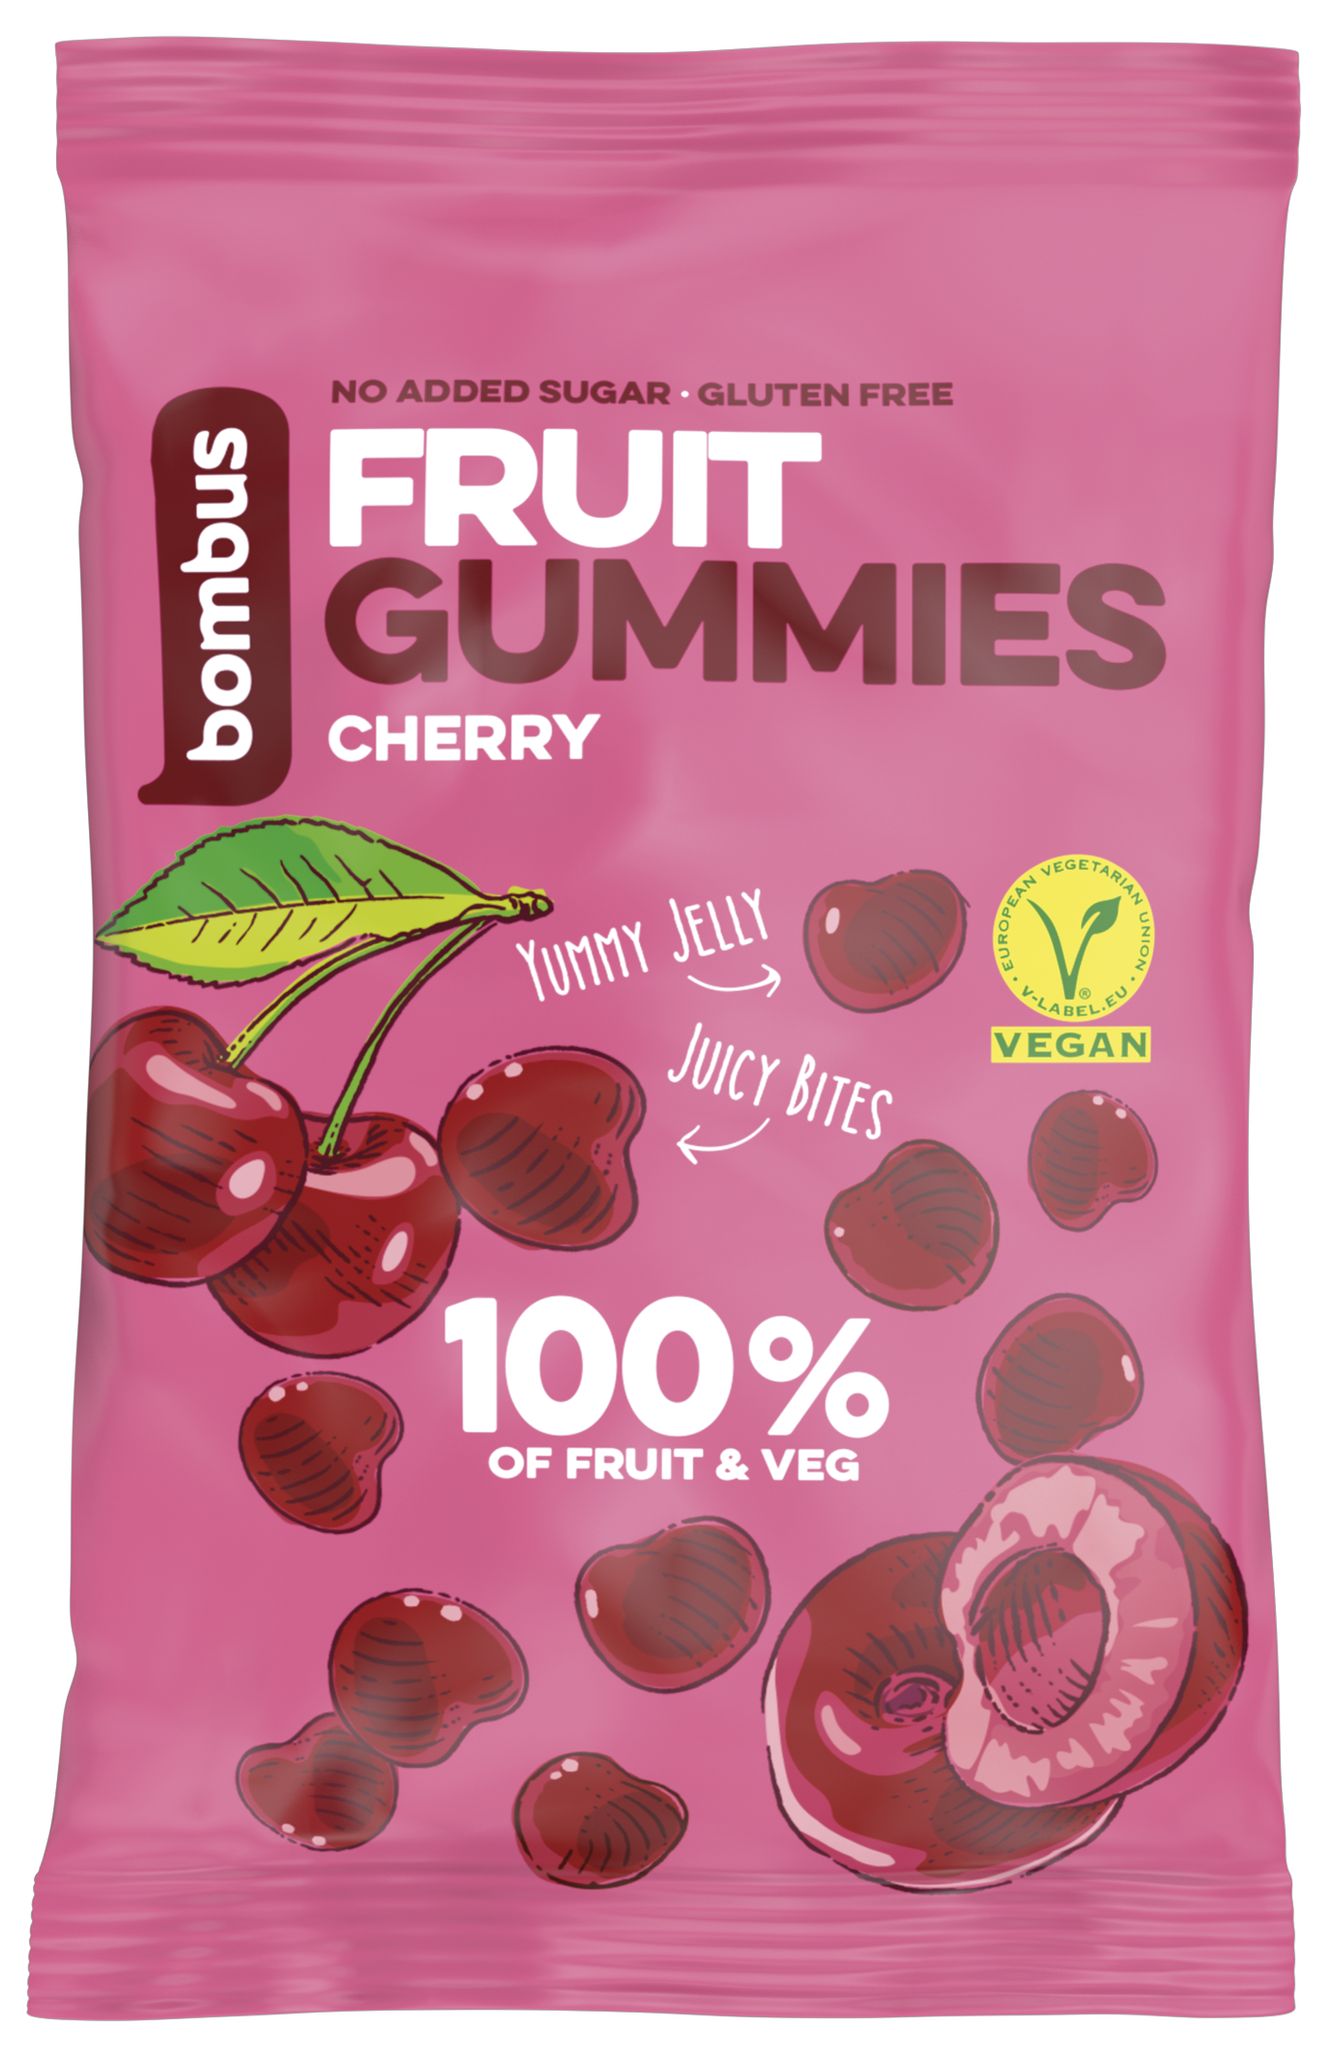 Bombus Fruit gummies